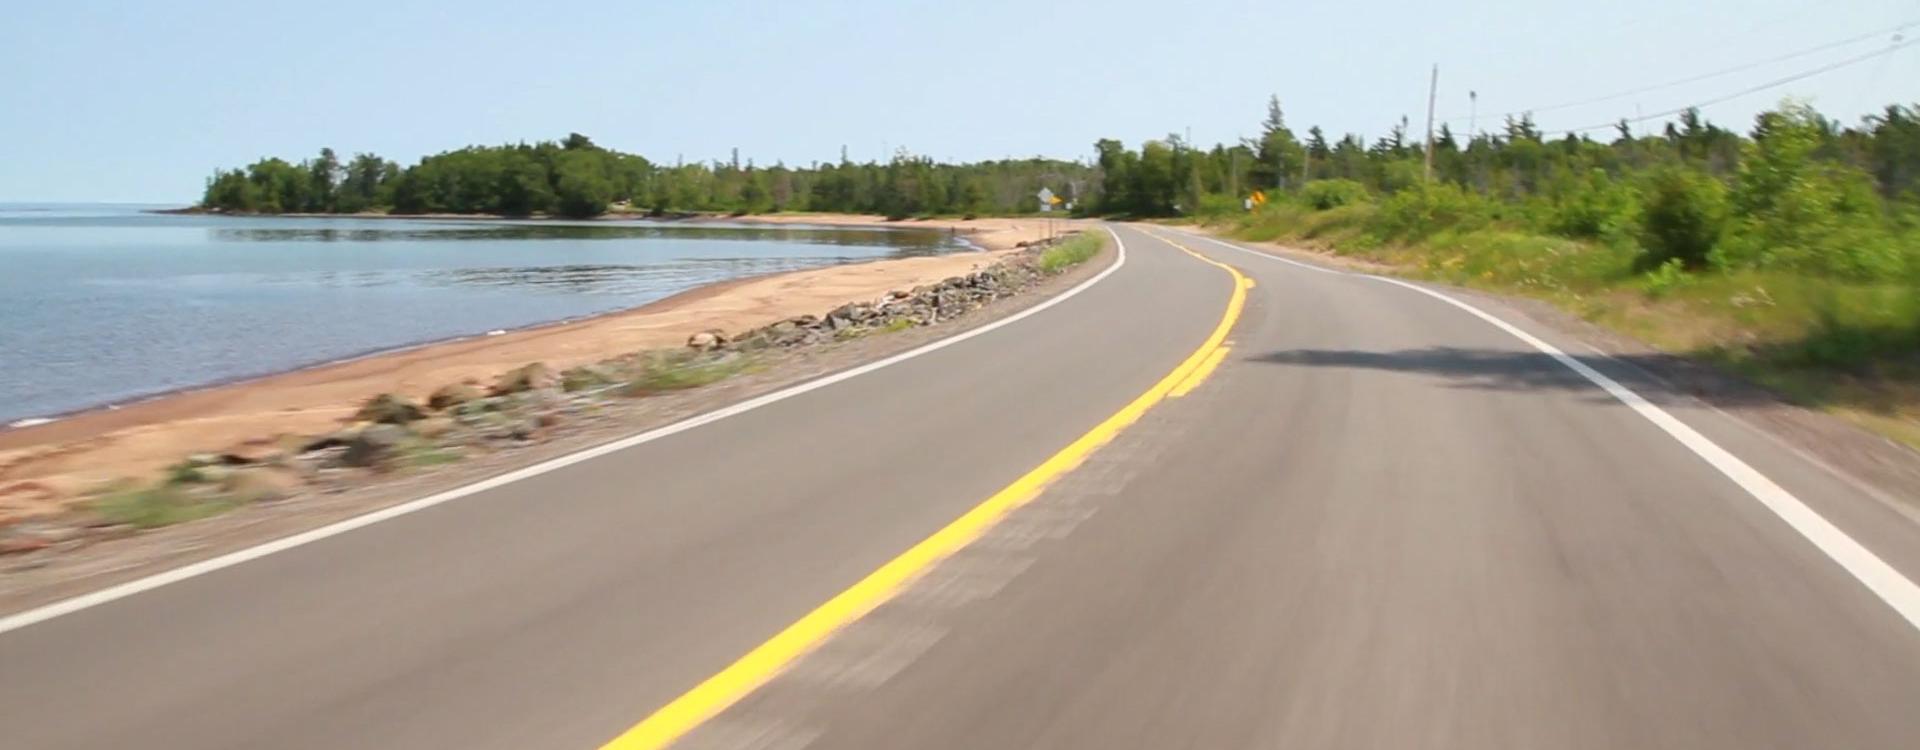 m26 lakeshore drive spur route roadway 